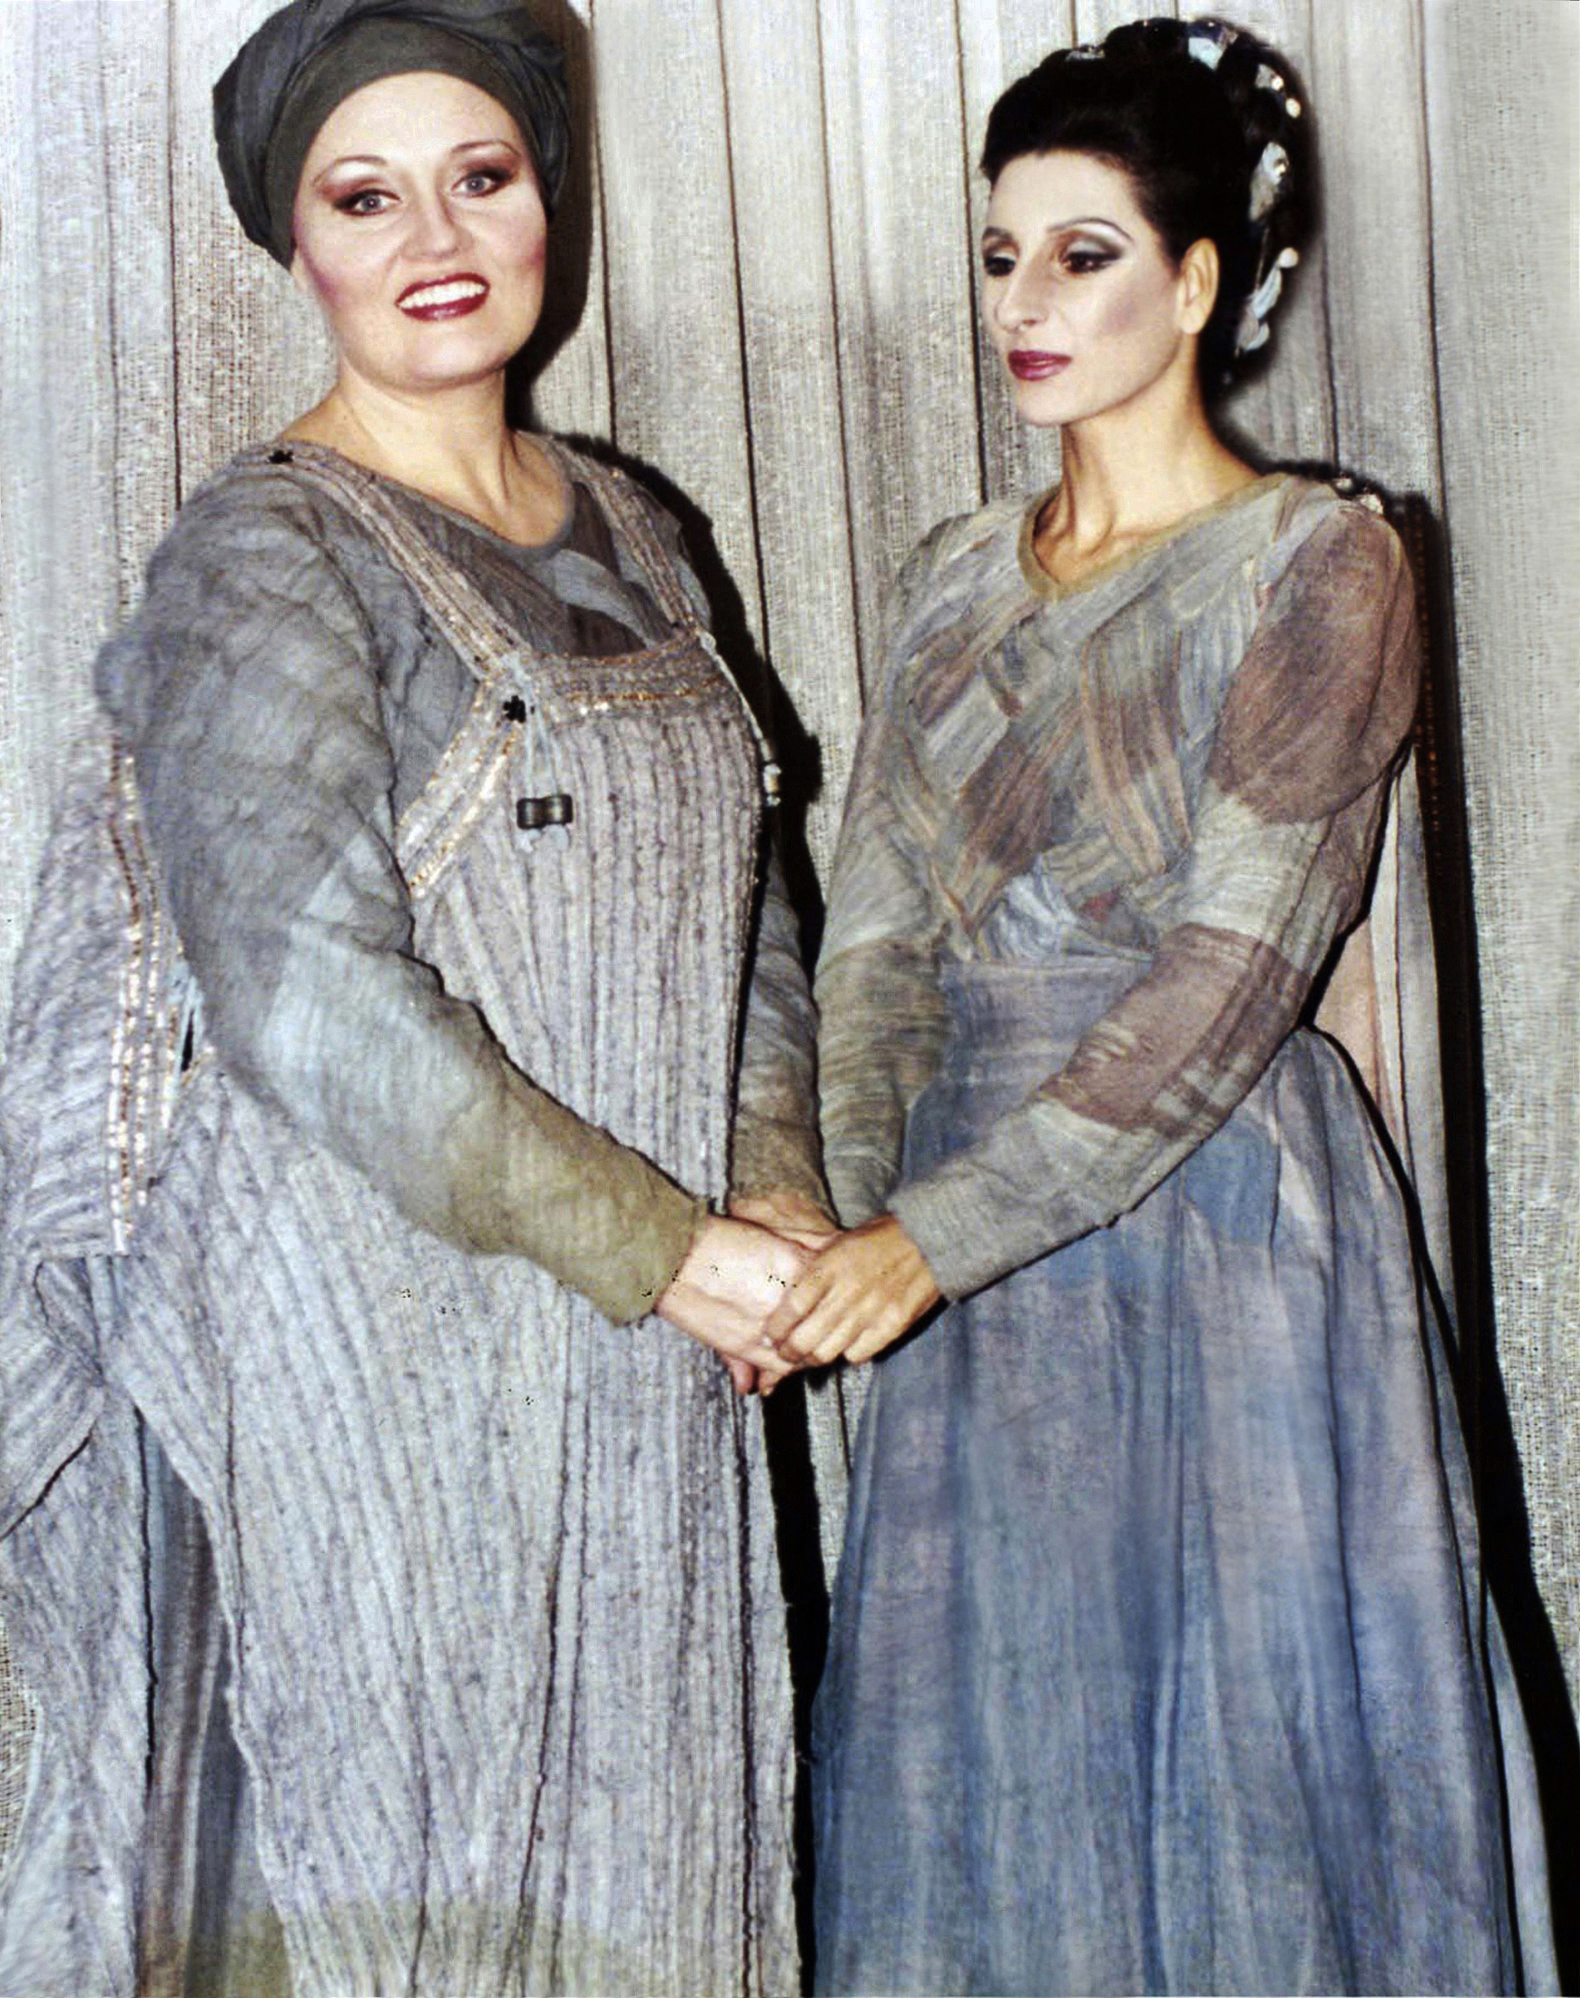 Lucia Aliberti with the American mezzosoprano Dolores Ziegler⚘Teatro Colon⚘Buenos Aires⚘Dressing Room⚘Opera⚘"Norma"⚘Makeup Session⚘:http://www.luciaaliberti.it #luciaaliberti #doloresziegler #teatrocolon #buenosaires #norma #opera #dressingroom #makeupsession